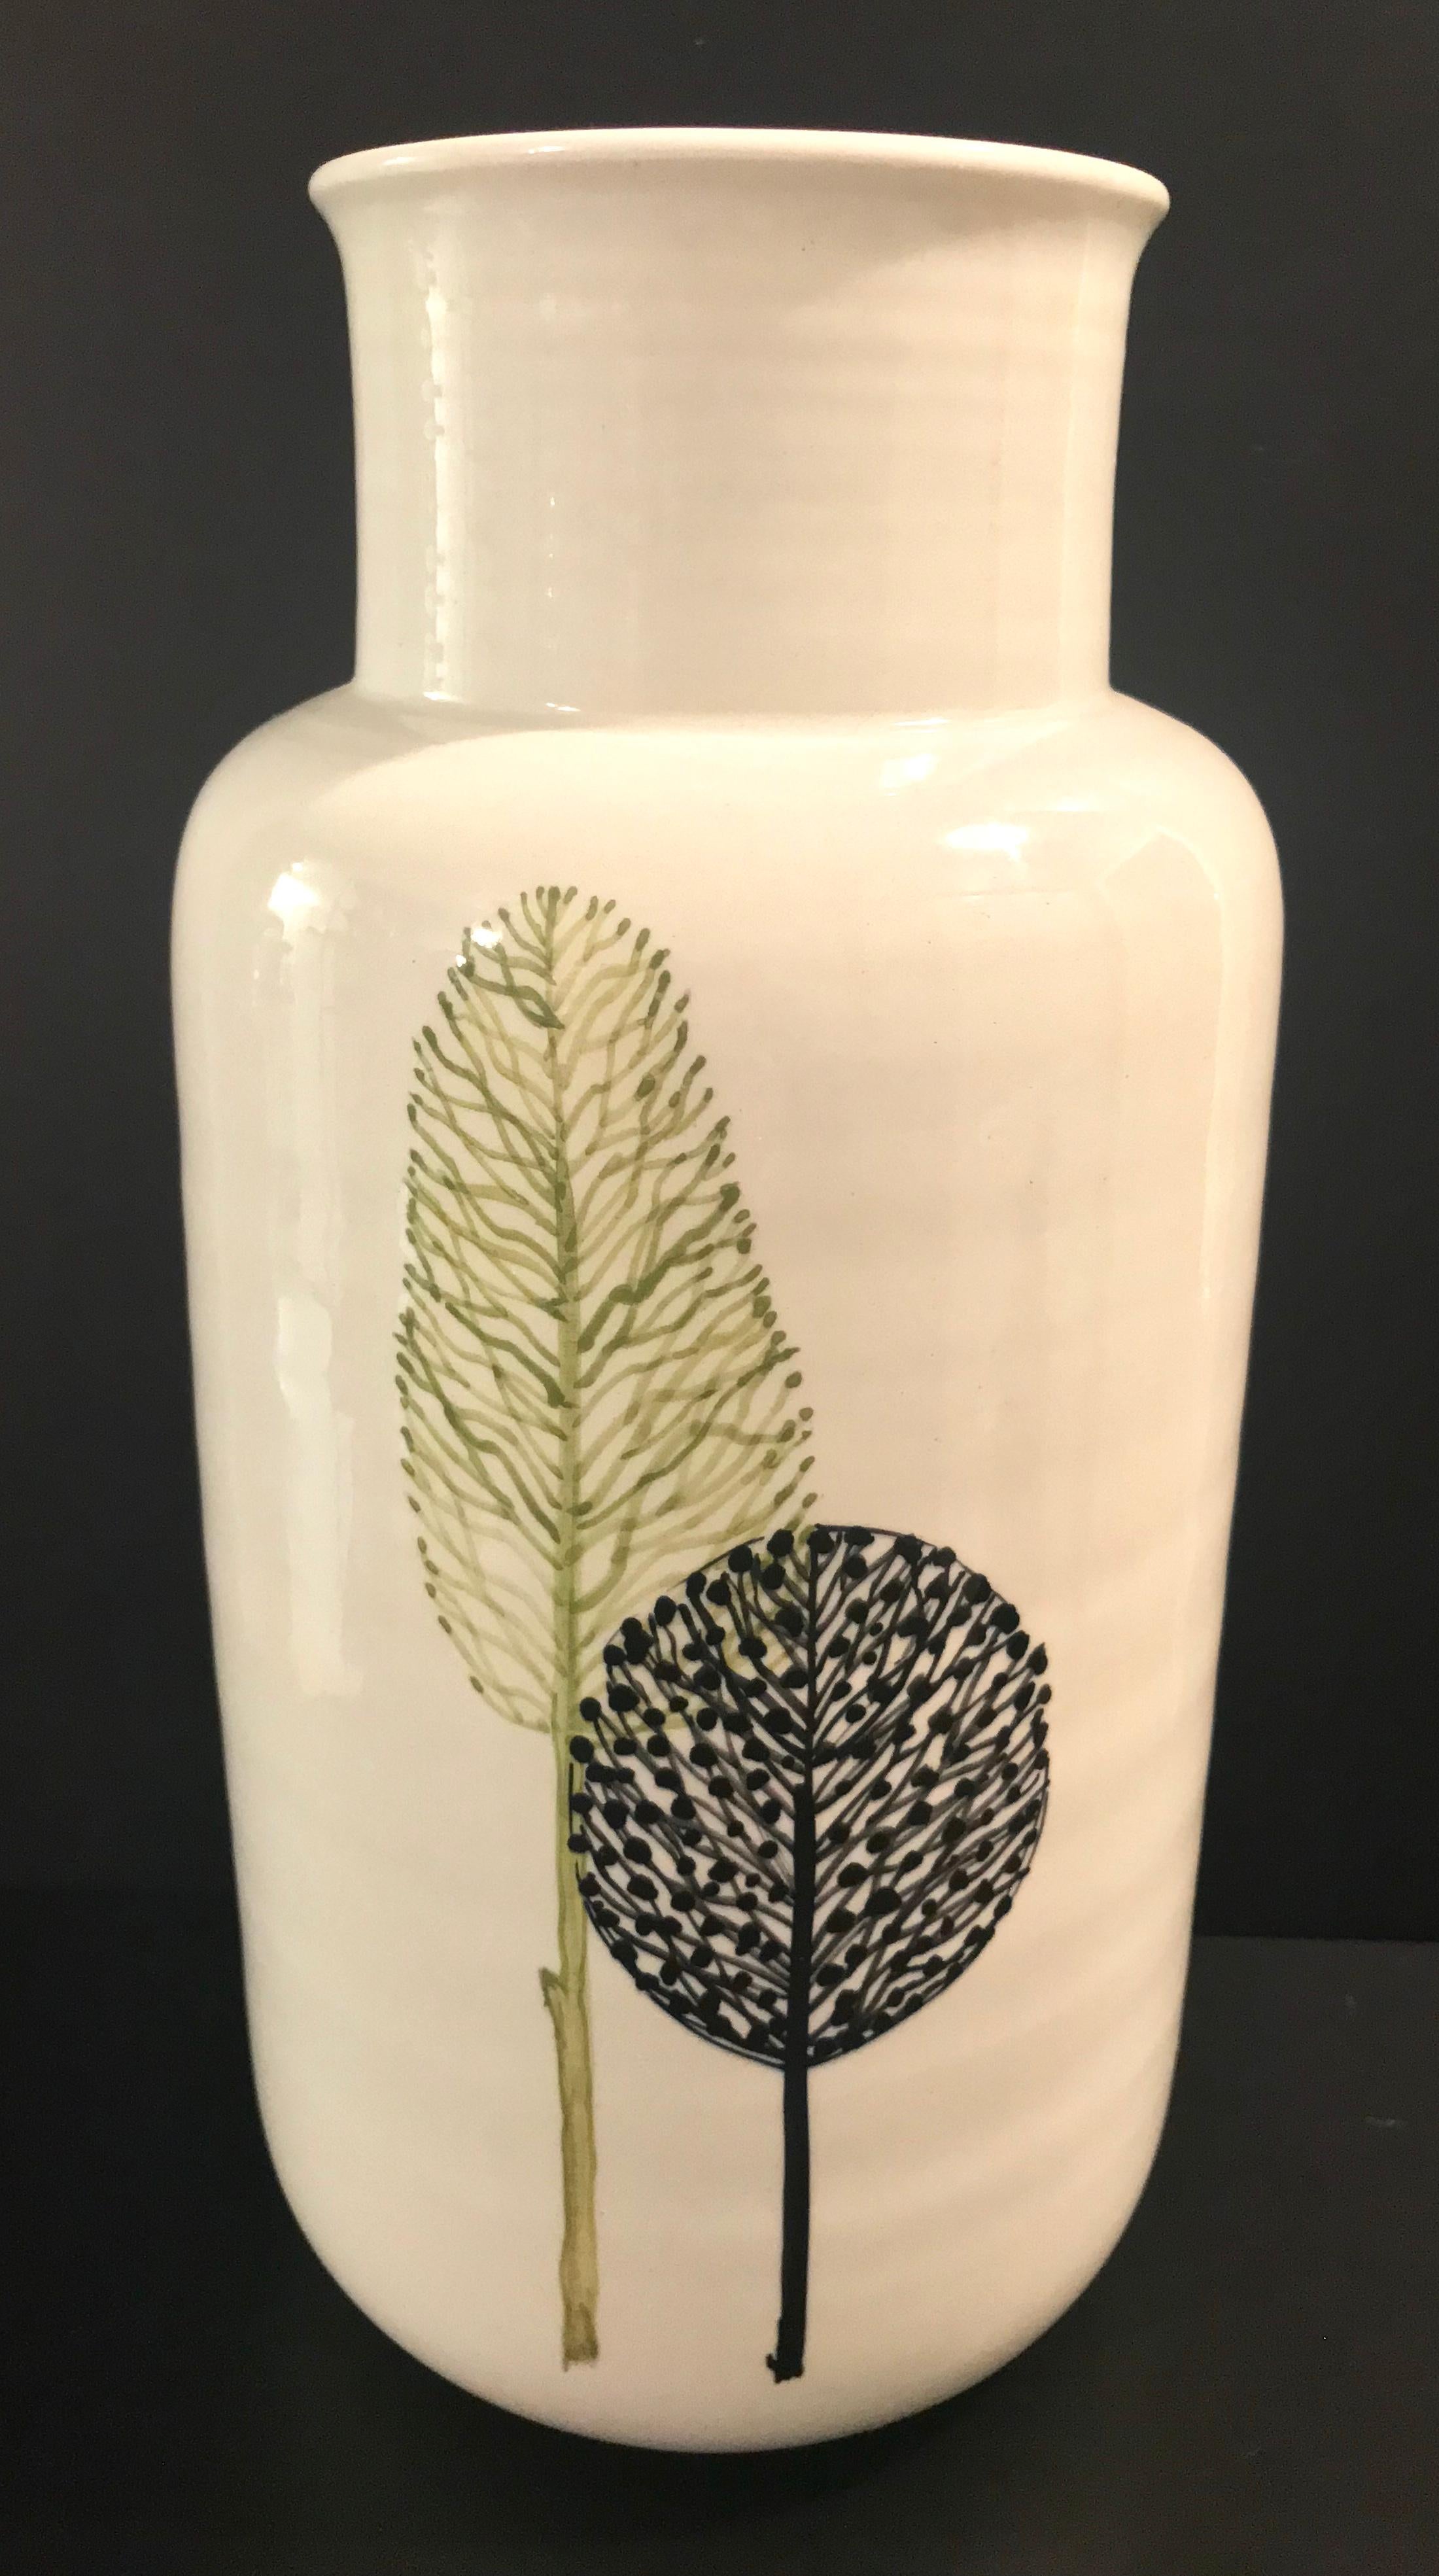 White ceramic Raymor vase with leaf design.